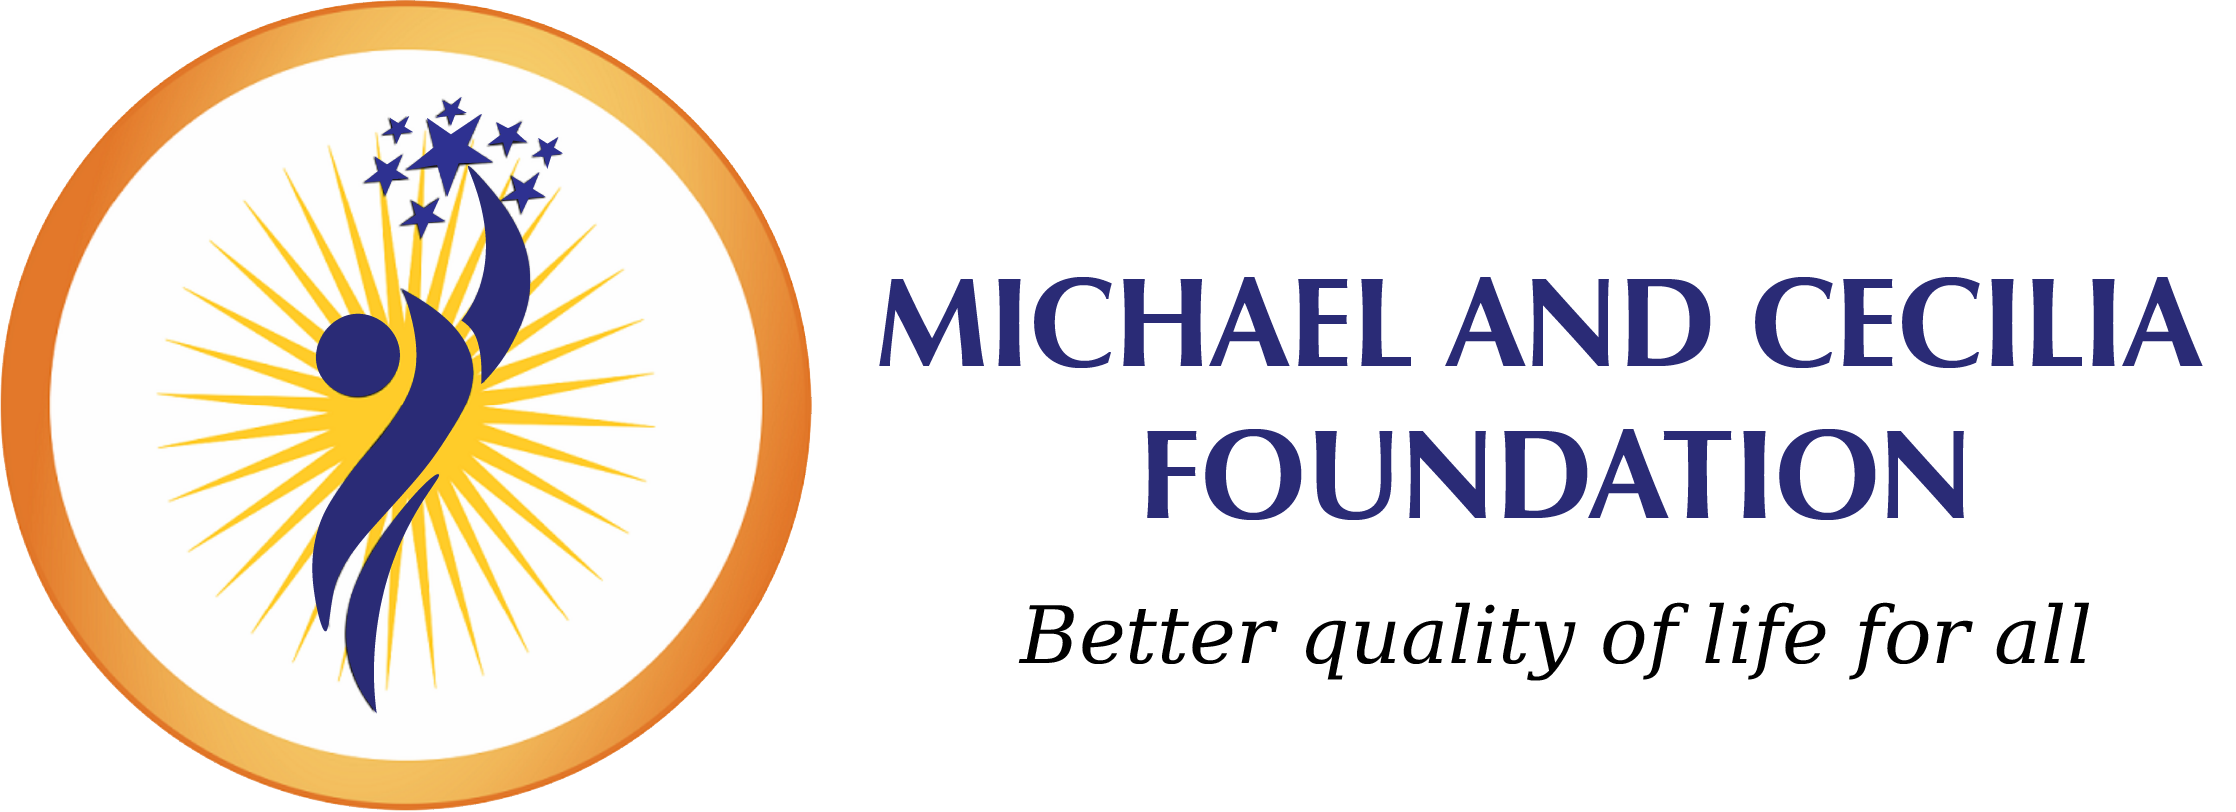 Michael and Cecilia Foundation